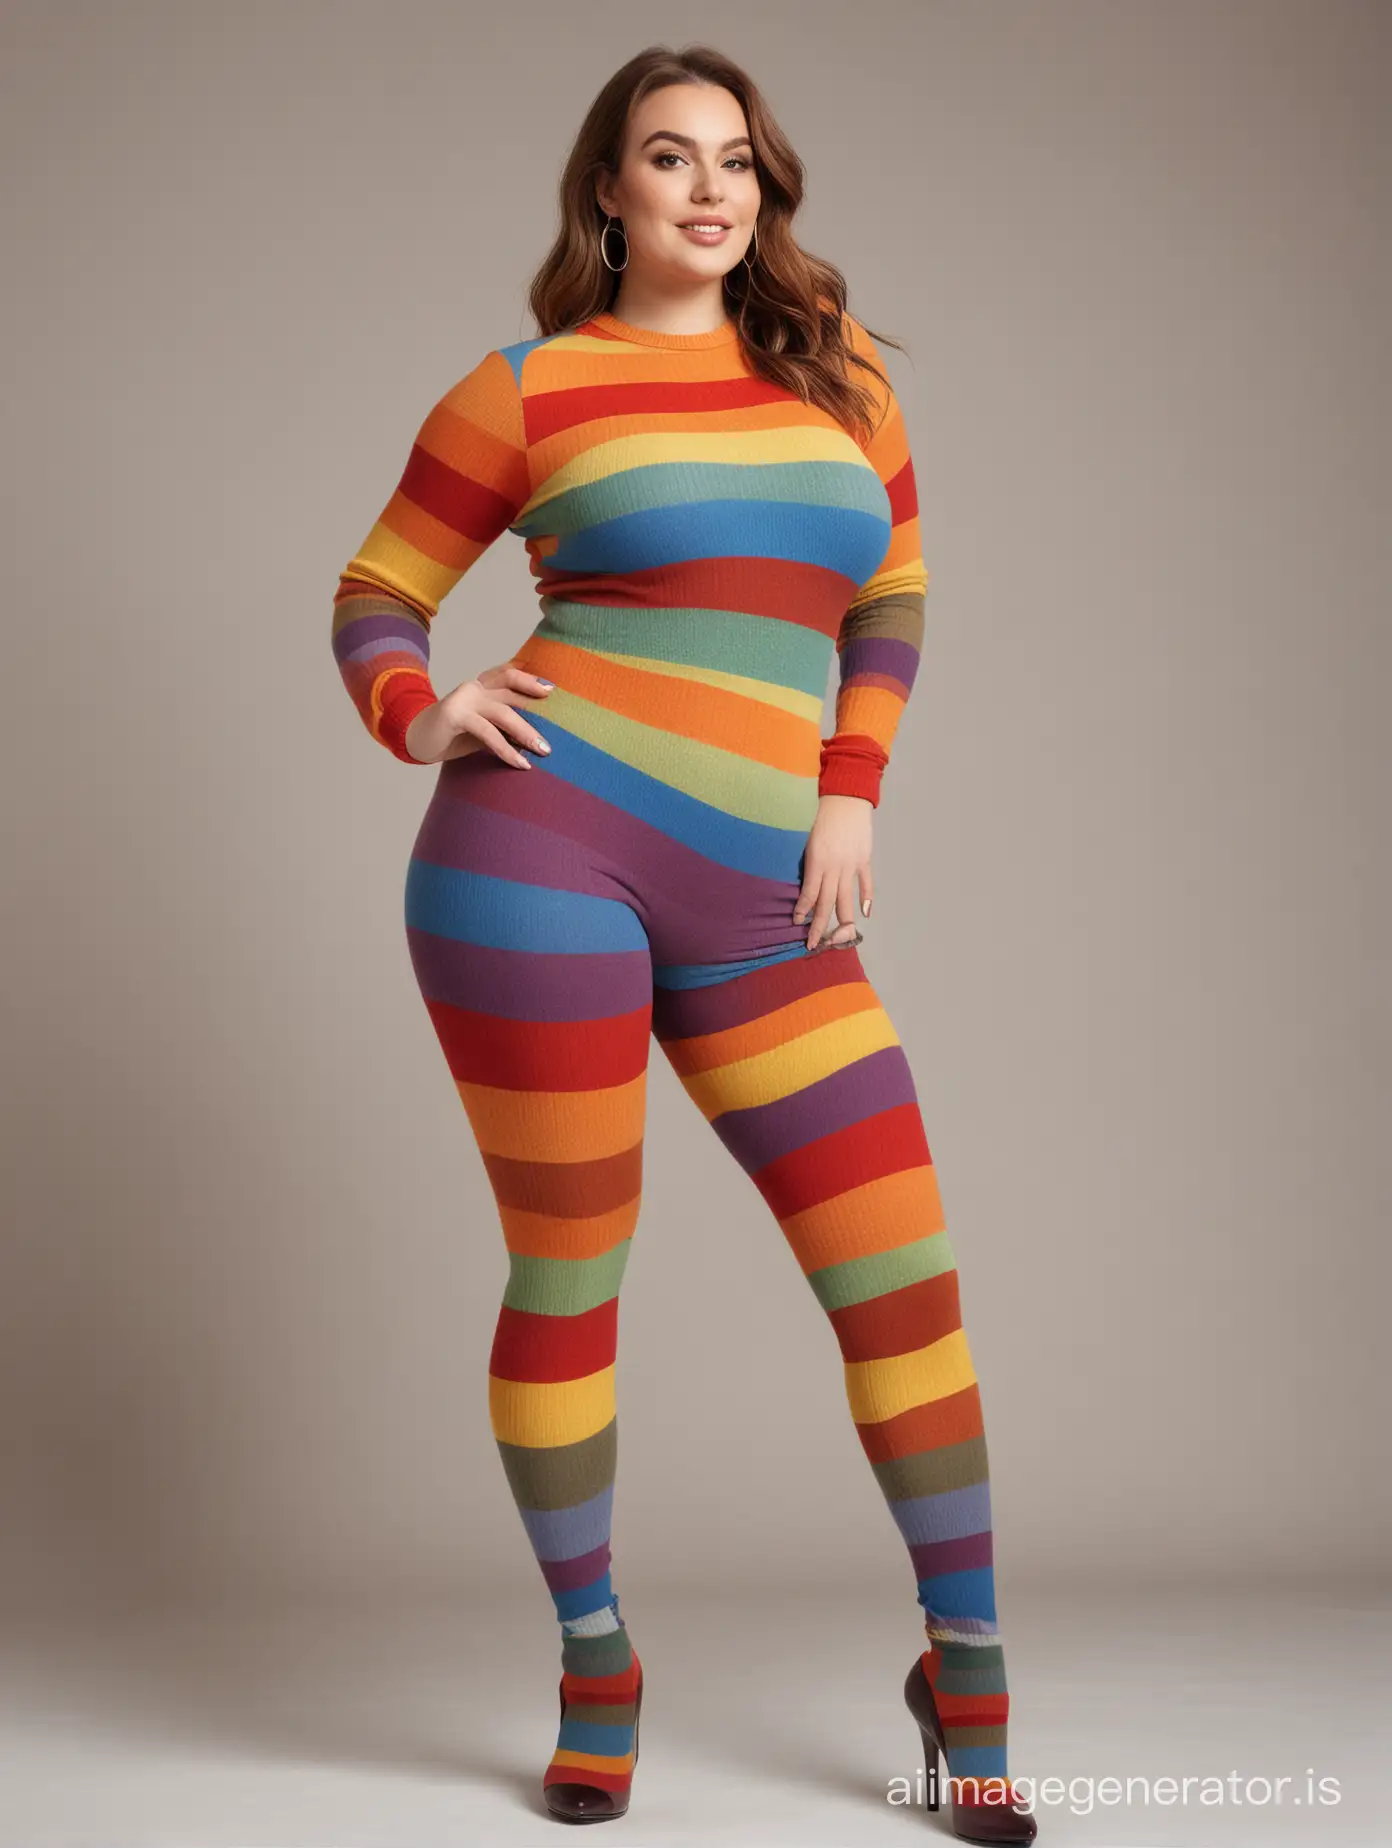 Fashionable-Curvy-Woman-Wearing-Rainbow-Wool-Tights-and-High-Heels